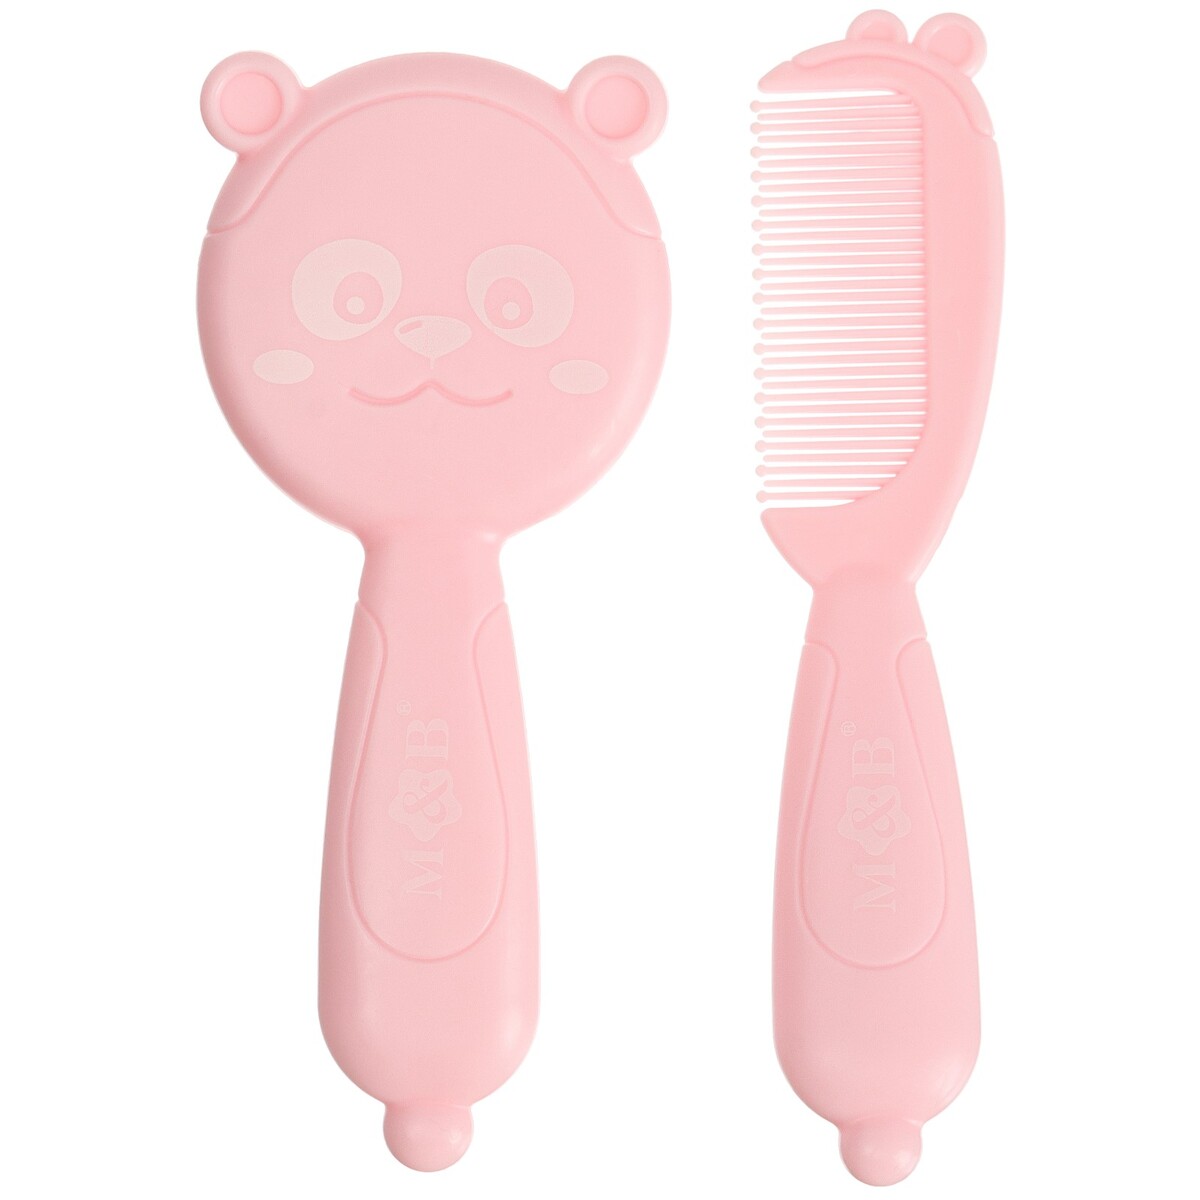 Набор для ухода за волосами: расческа и щетка набор детский для ухода за волосами расческа и щетка с натуральной щетиной белый розовый